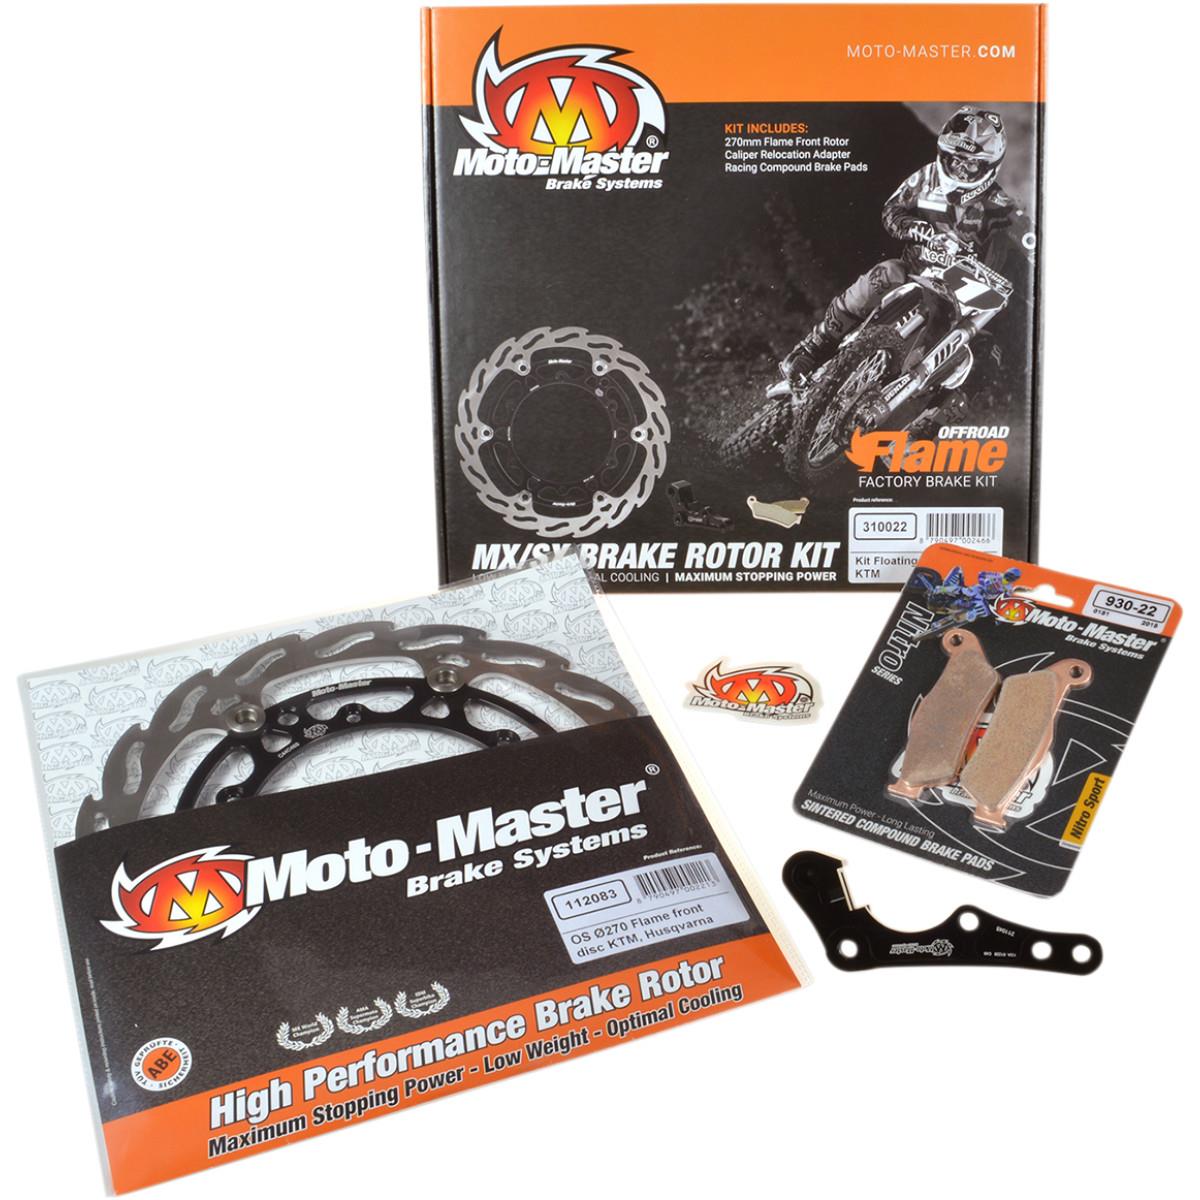 Moto-Master Brake Disc Kit Flame Oversize Honda CRF 250R 19-, CRF 450R 19-, 270 mm, Front